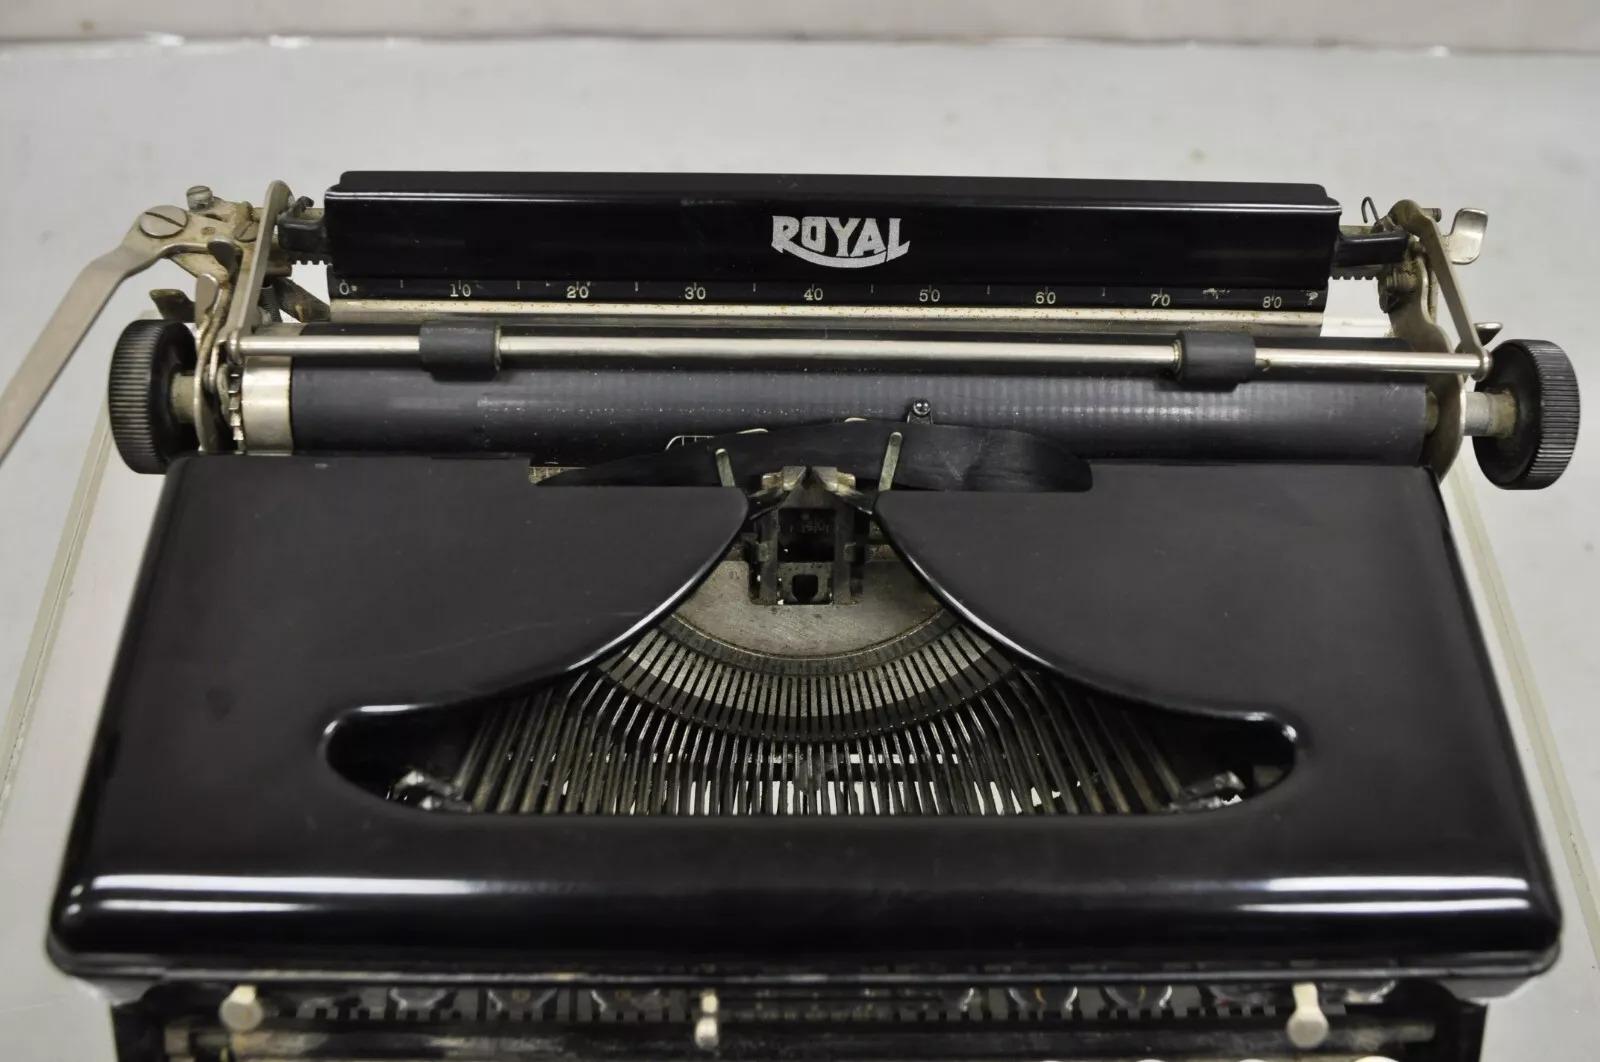 Steel Antique 1938 Royal Model O Vintage Art Deco Black Portable Typewriter For Sale